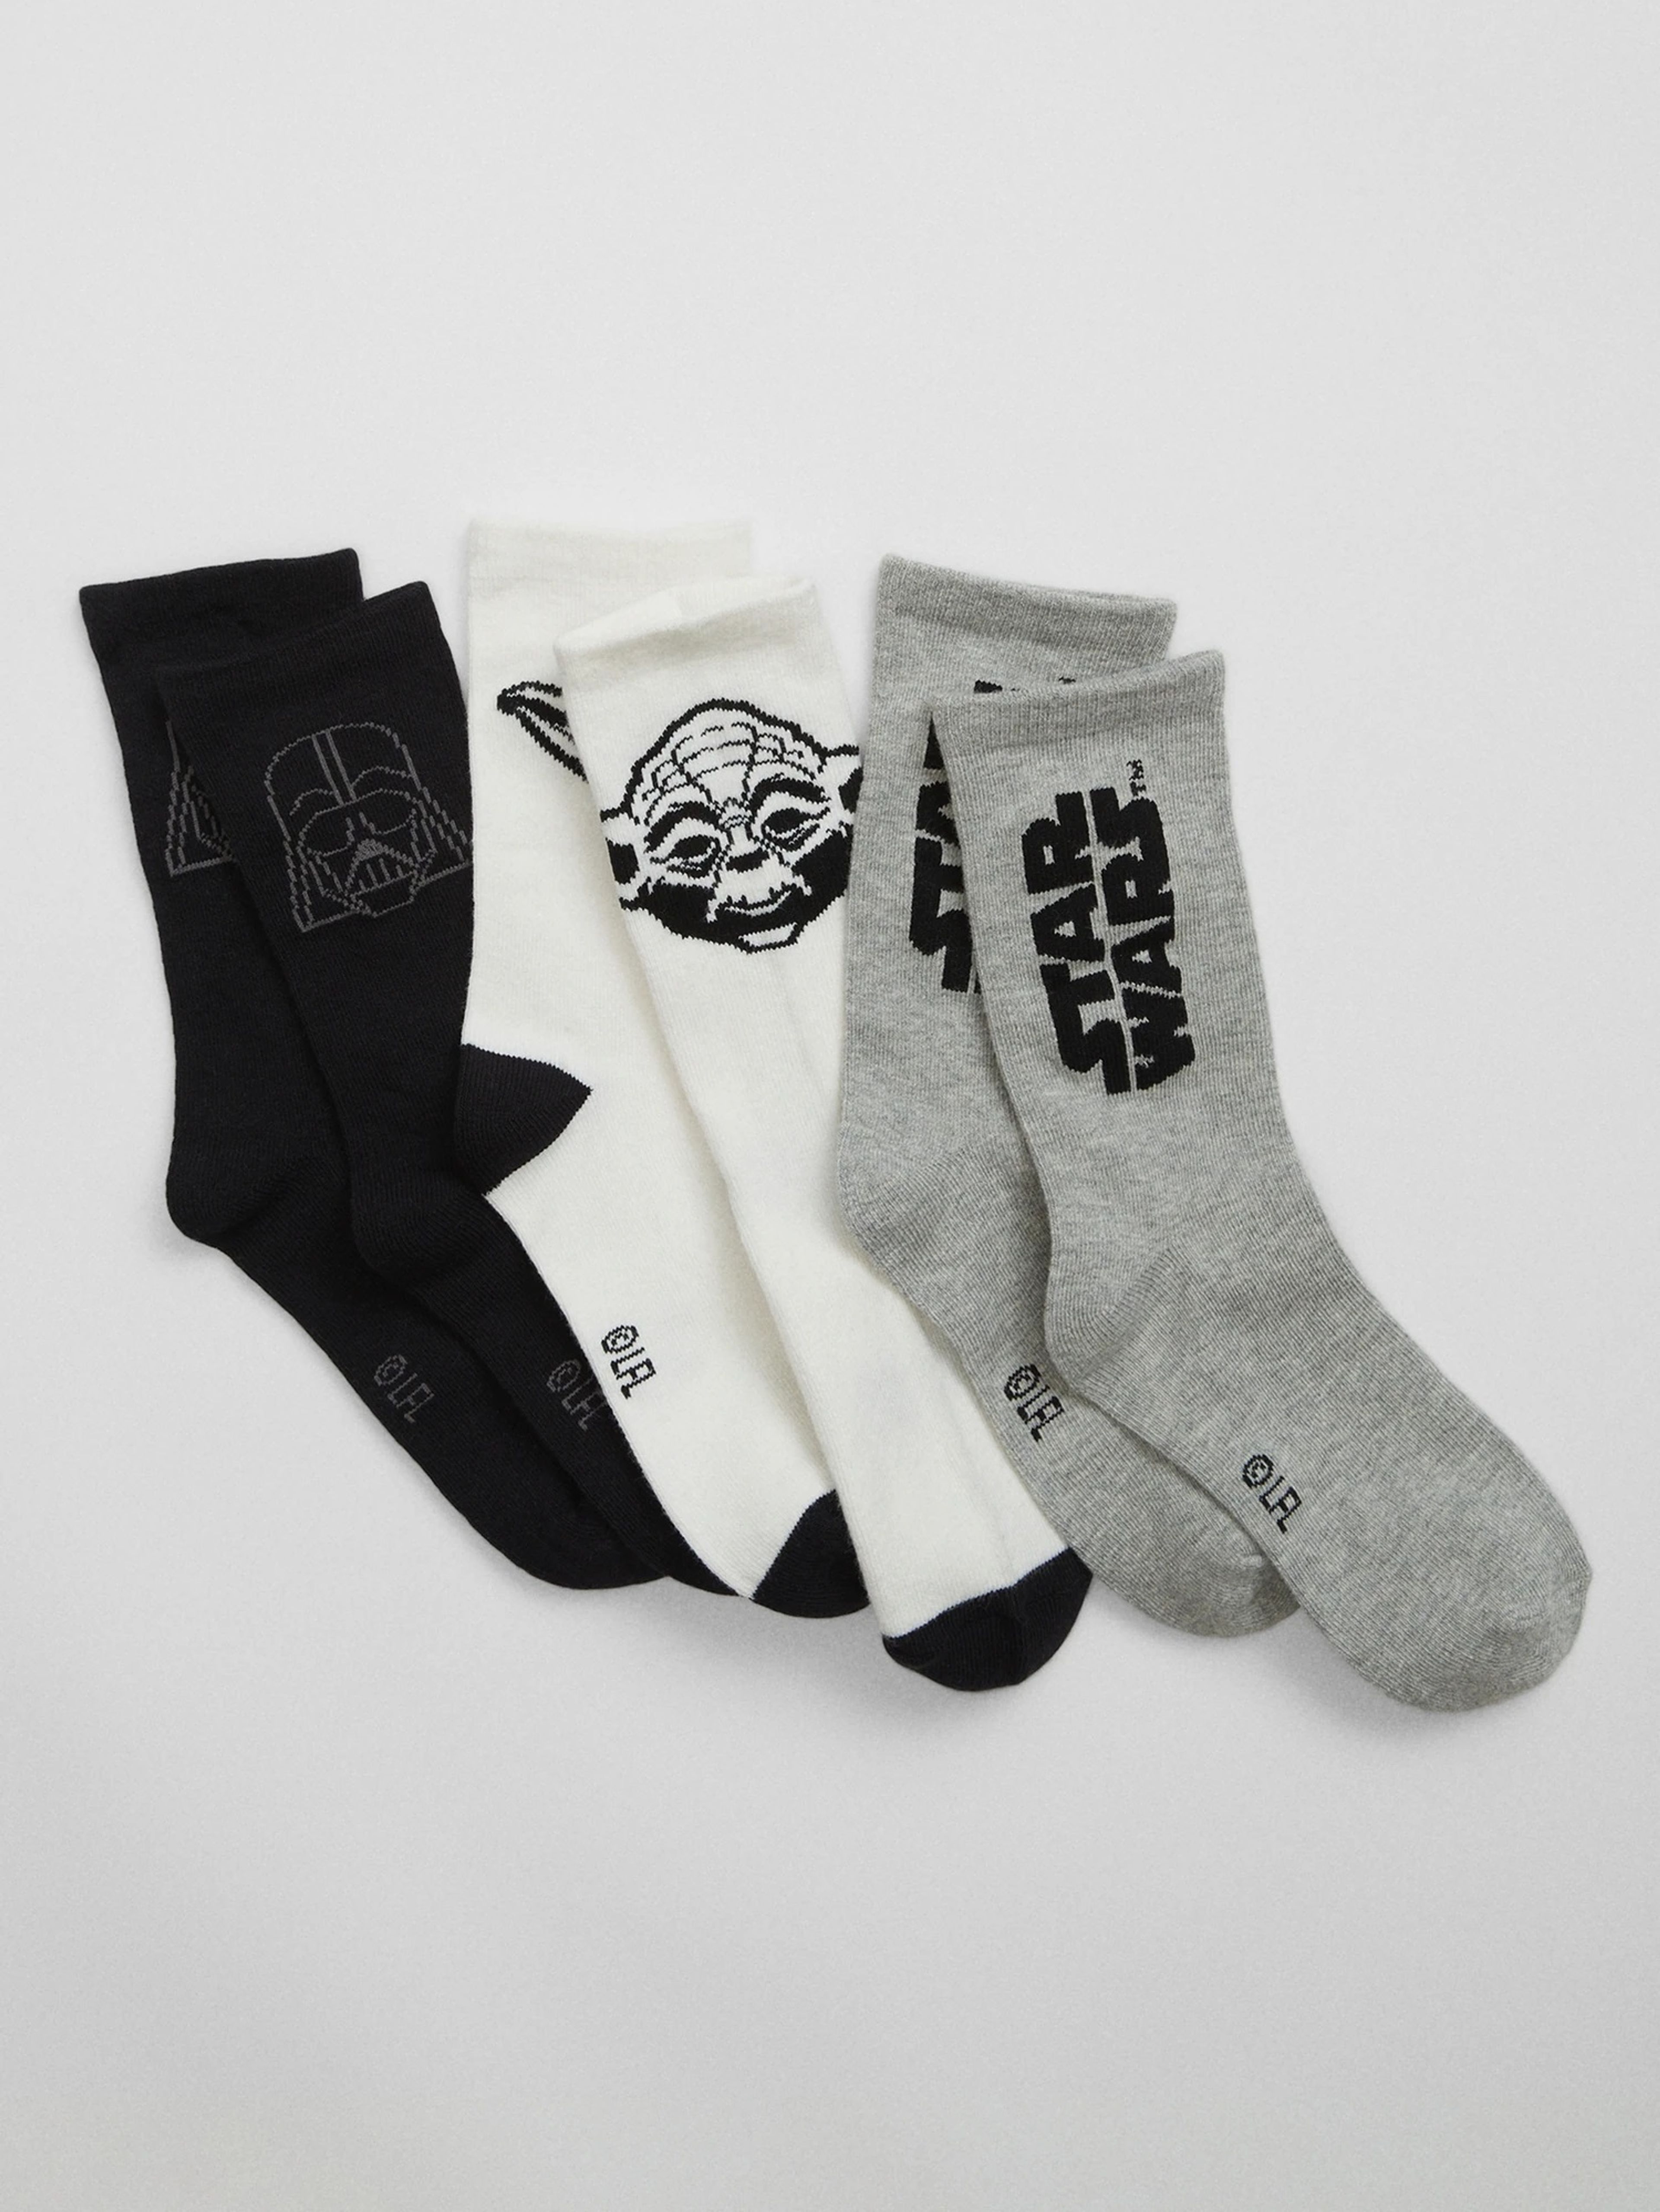 Socken GAP & Star Wars, 3 Paare